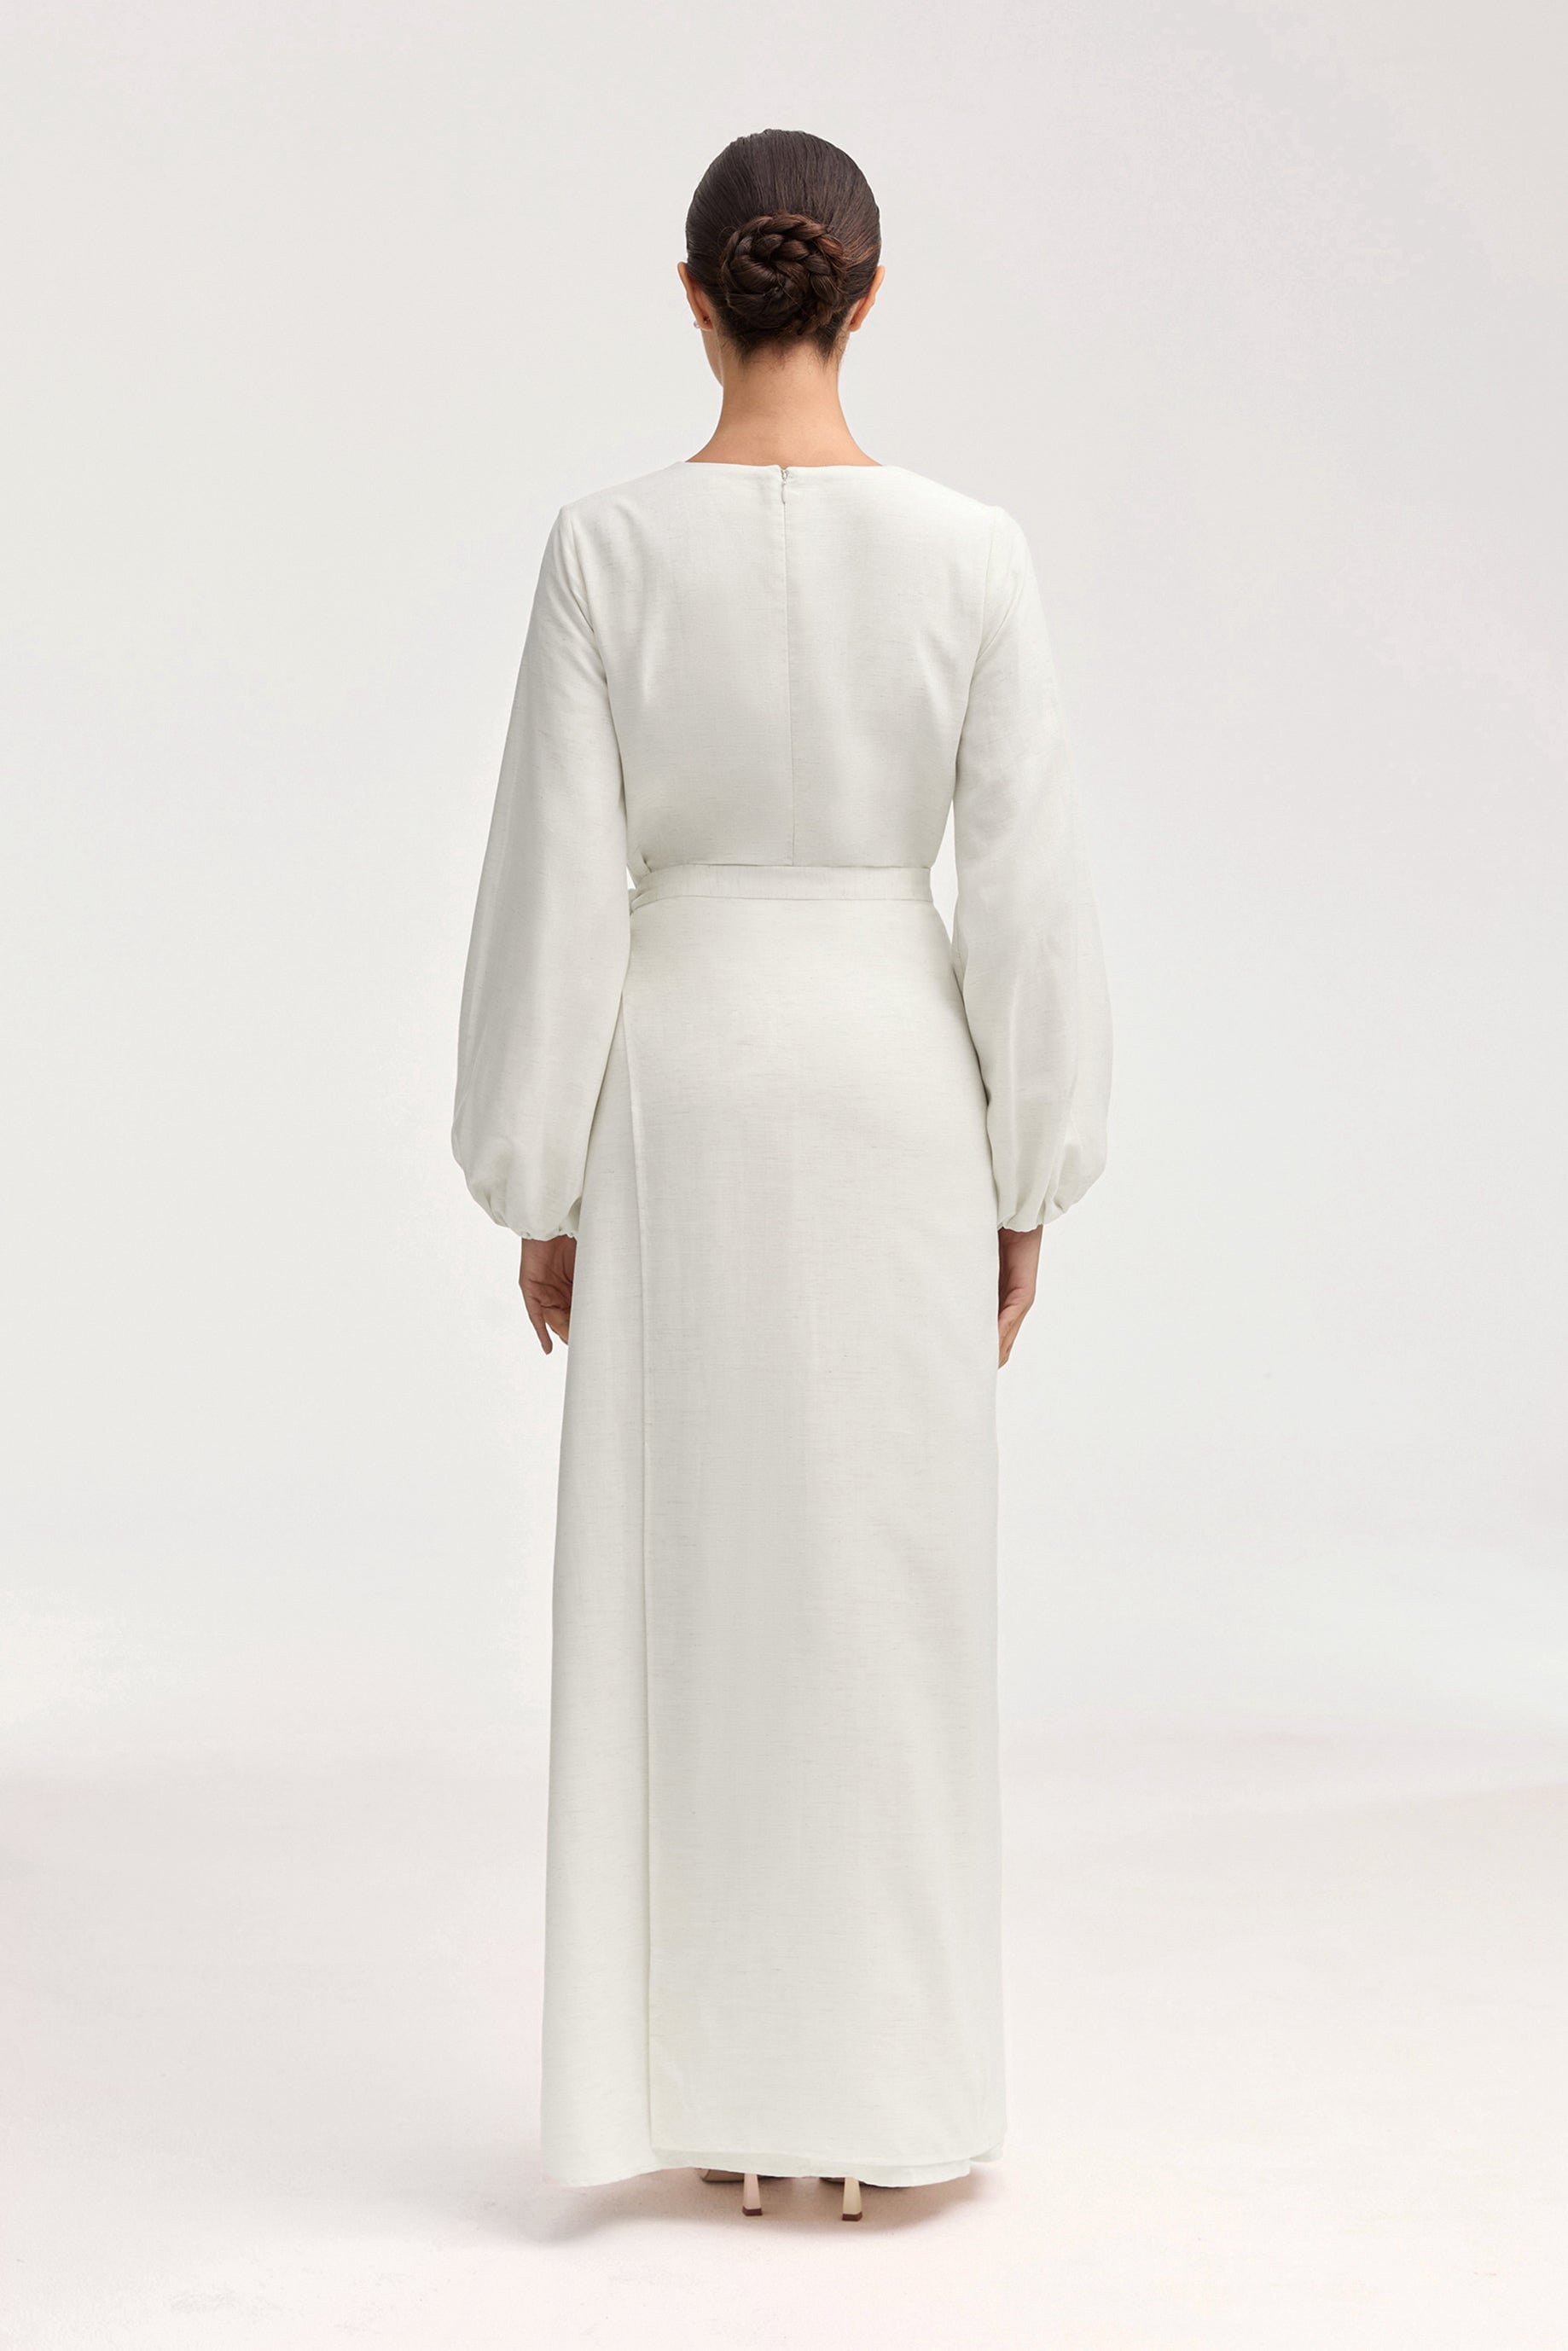 Linen Maxi Dress & Wrap Skirt Set - Off White Clothing Veiled 